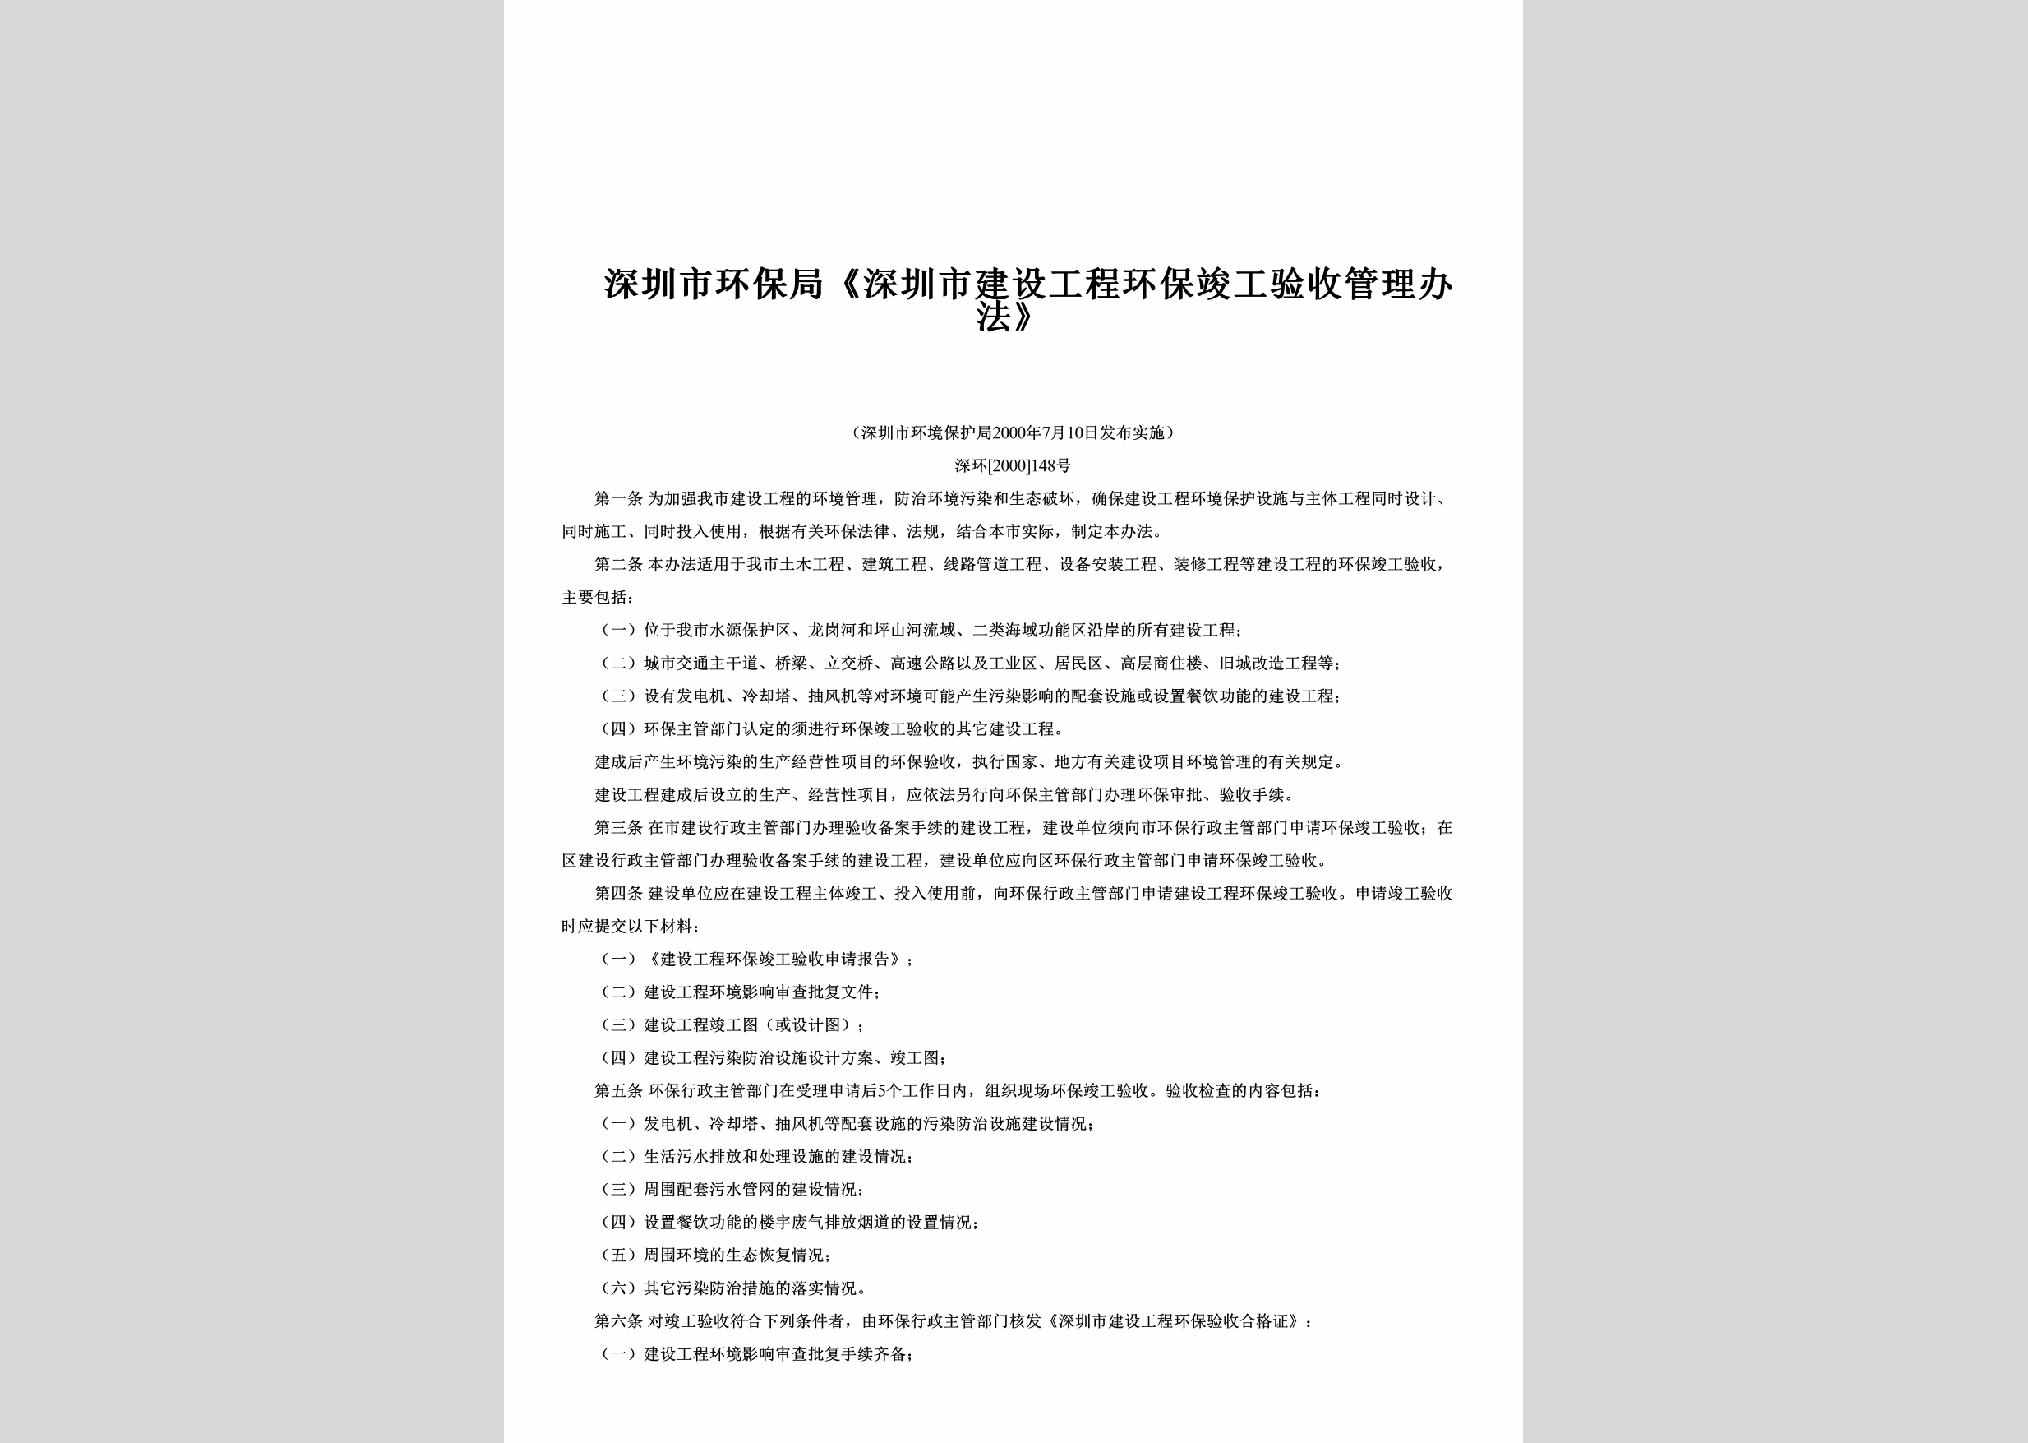 深环[2000]148号：《深圳市建设工程环保竣工验收管理办法》